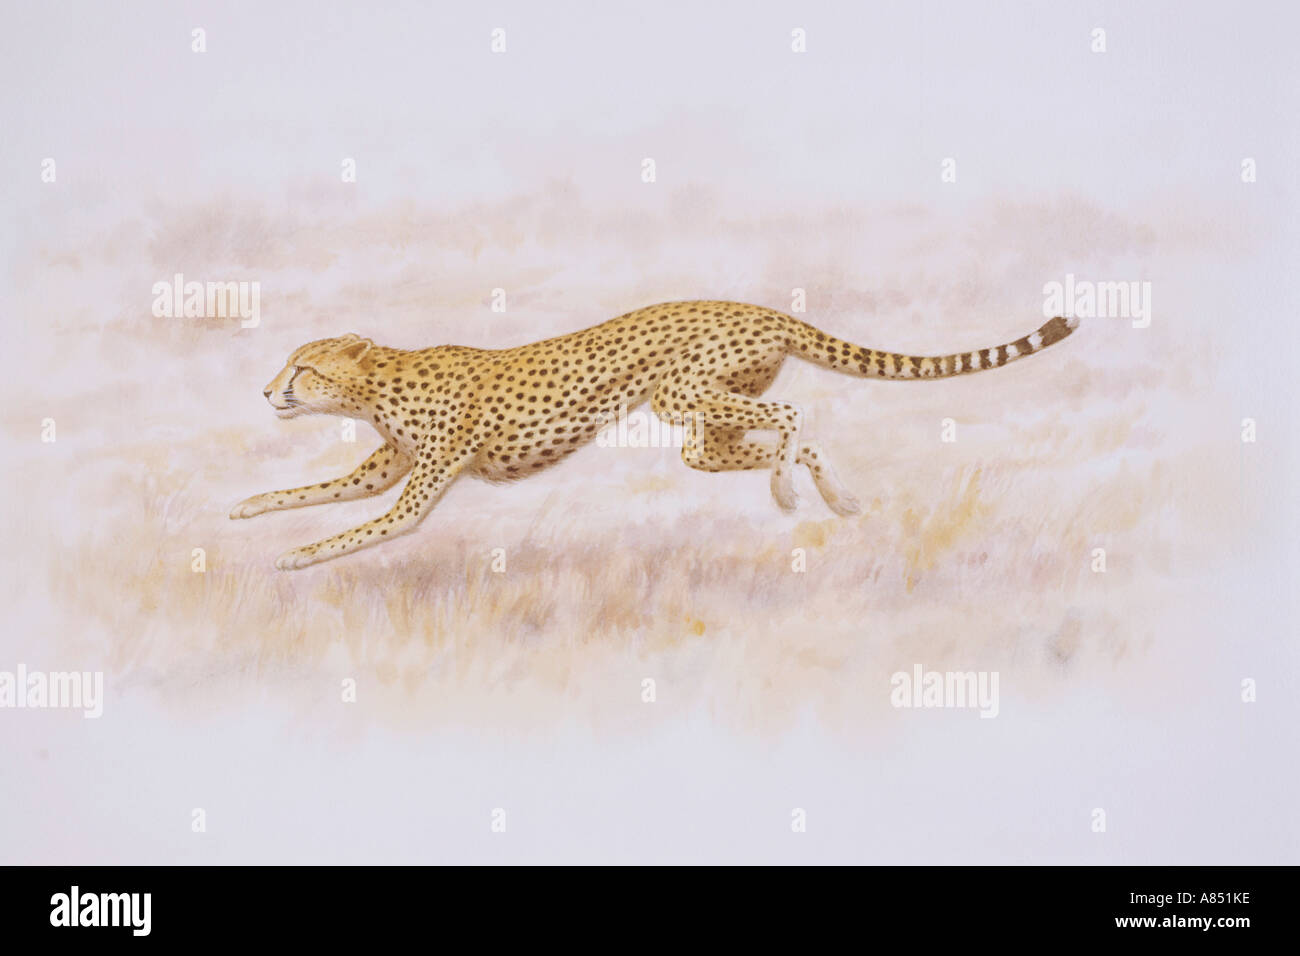 Cheetah Running. Stock Photo